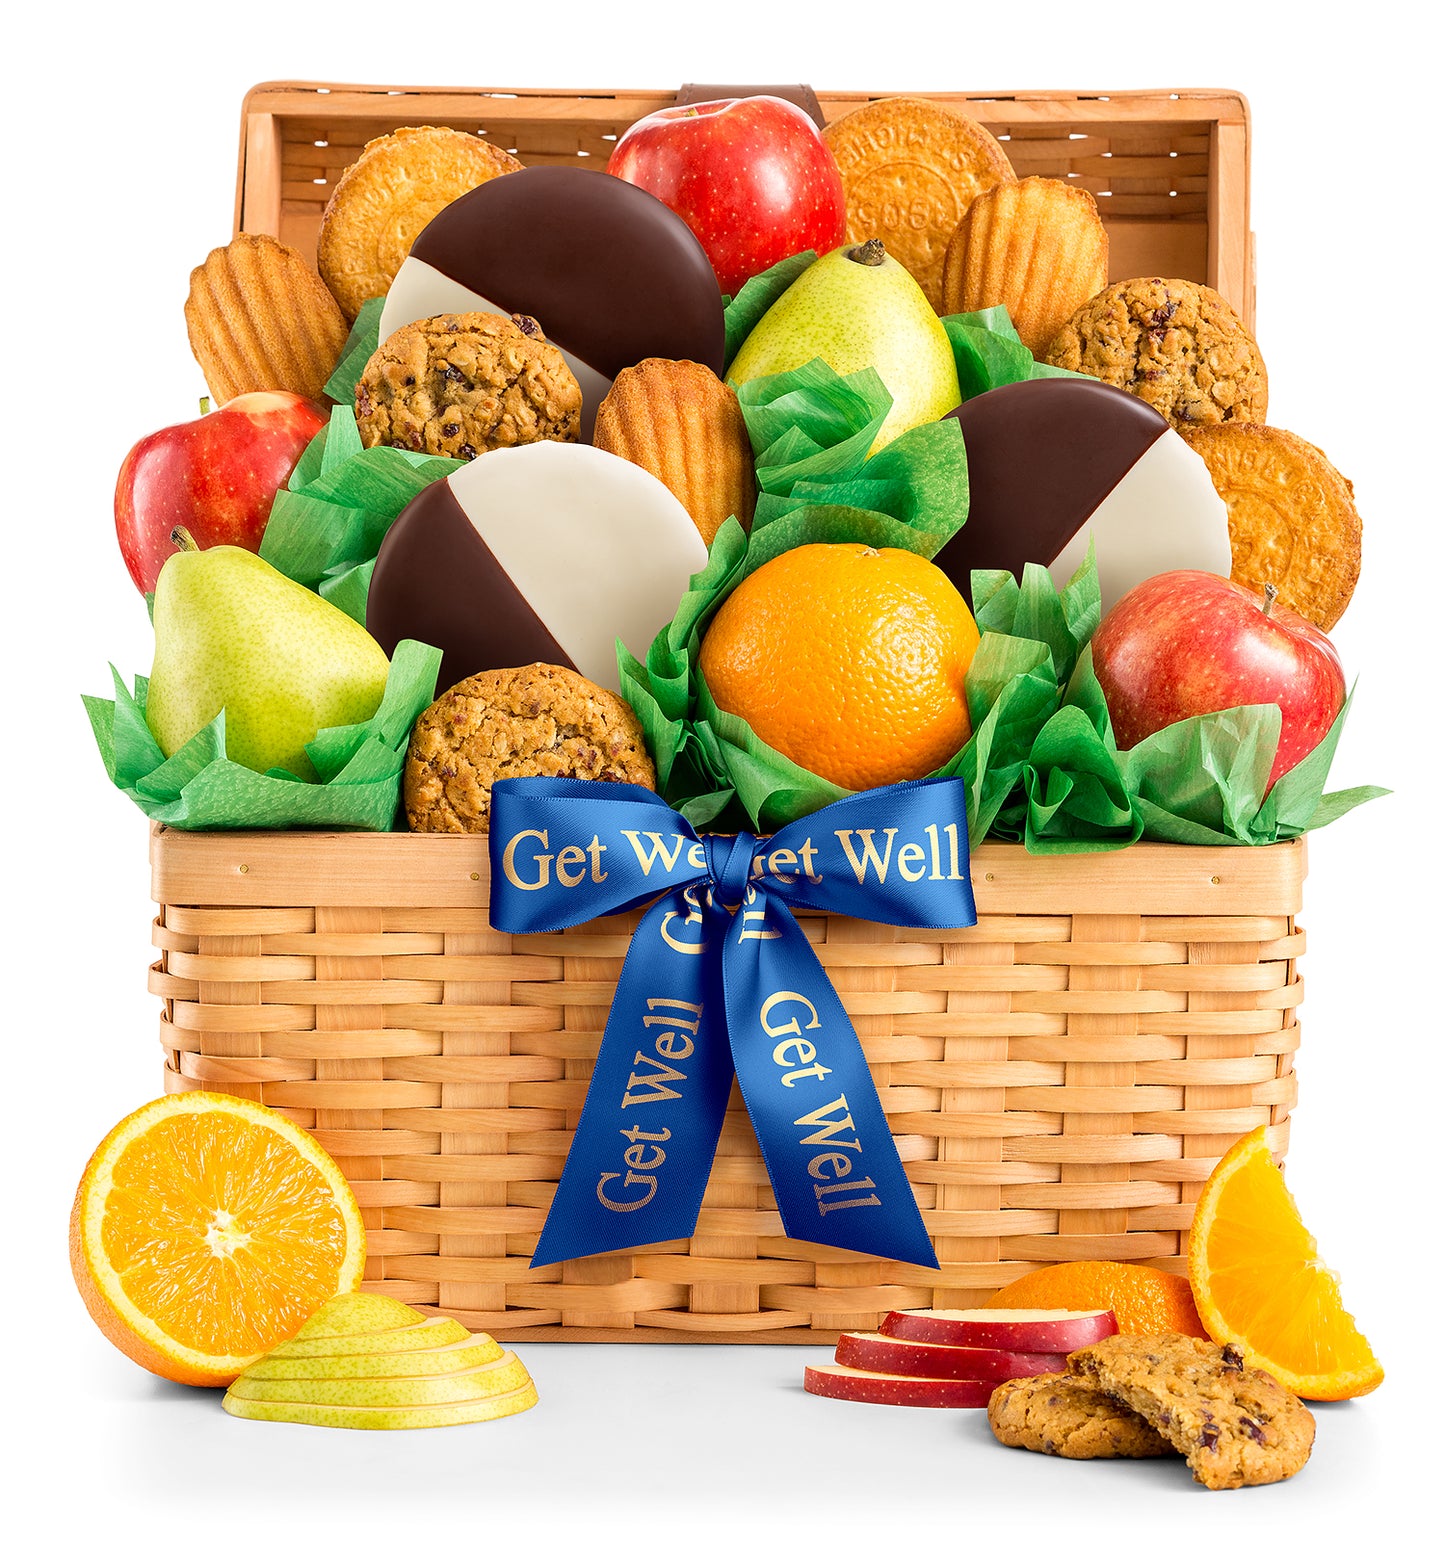 Get Well Premium Grade Fruit and Cookies Basket